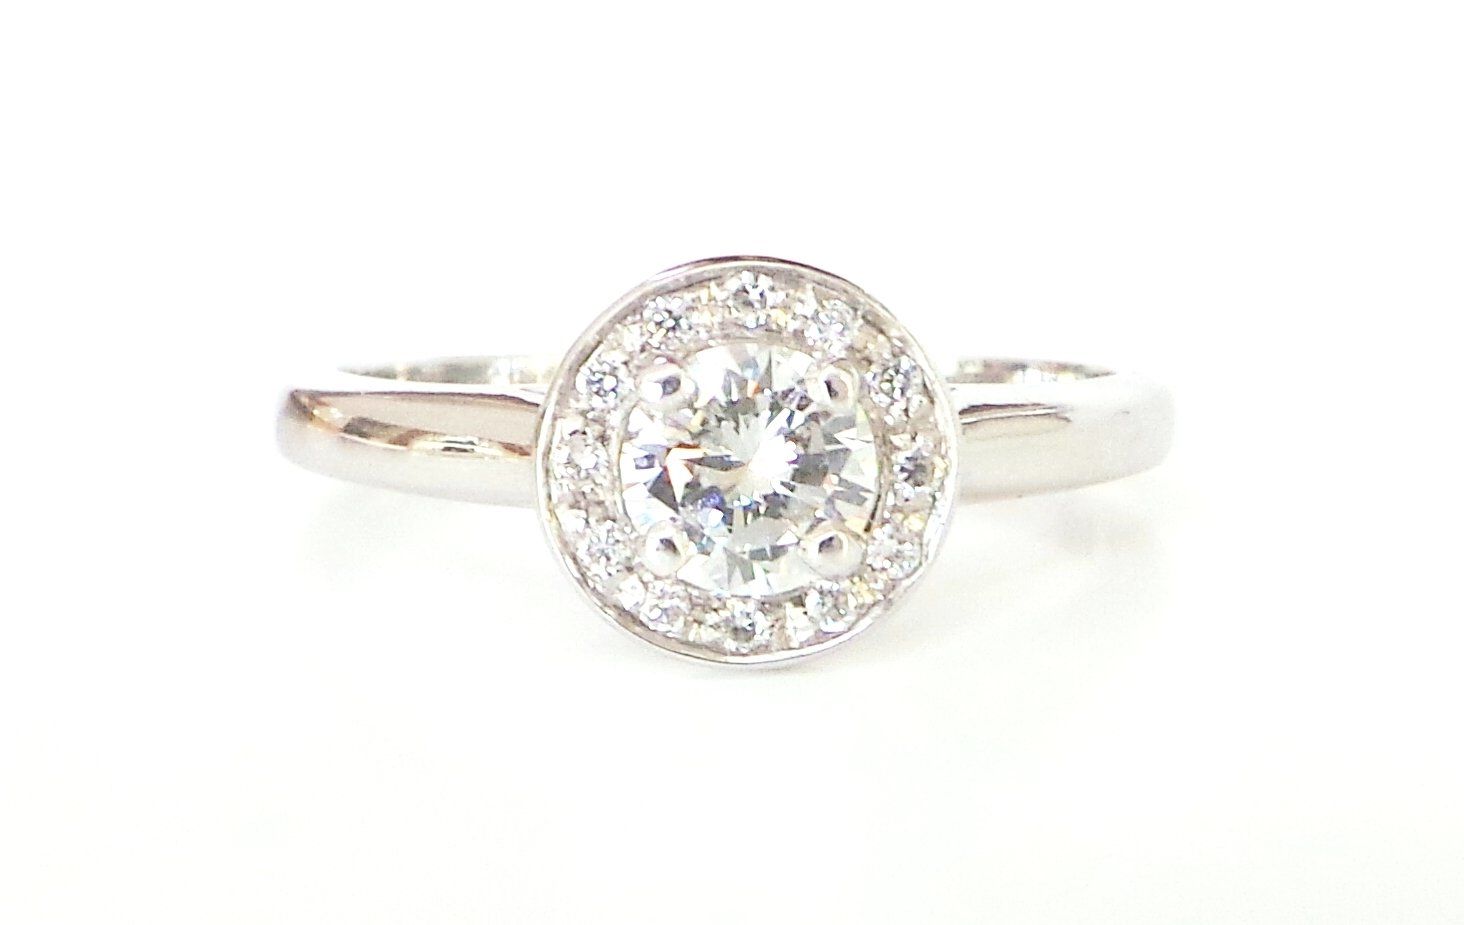 Cattelan - anello in oro bianco 750 con diamanti - mod. Annalisa